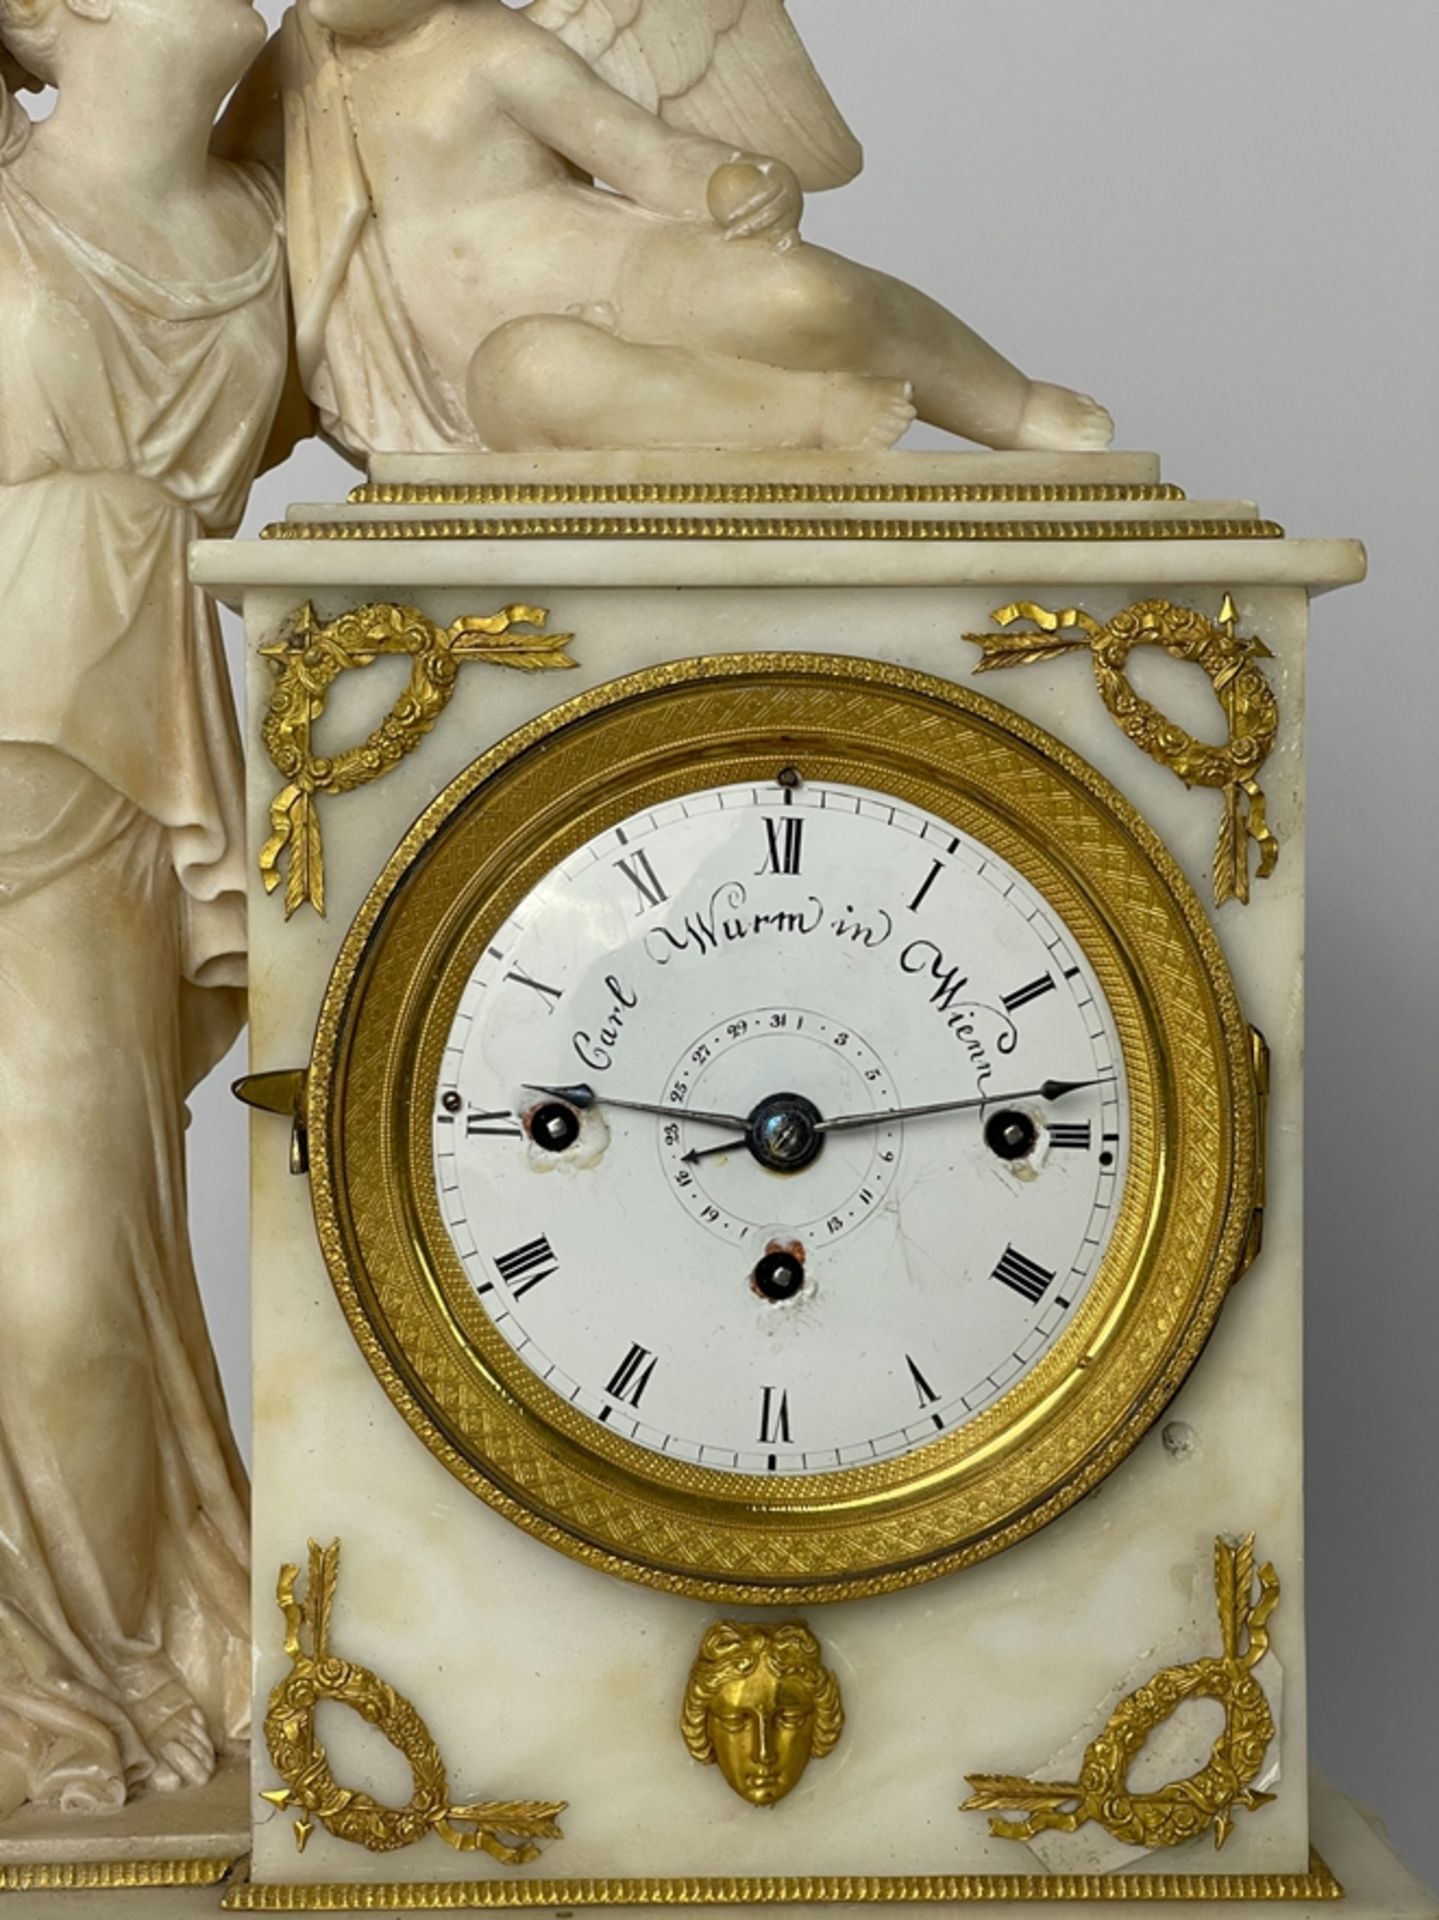 Traumhafte Wiener Empire Alabaster Uhr - Image 2 of 9